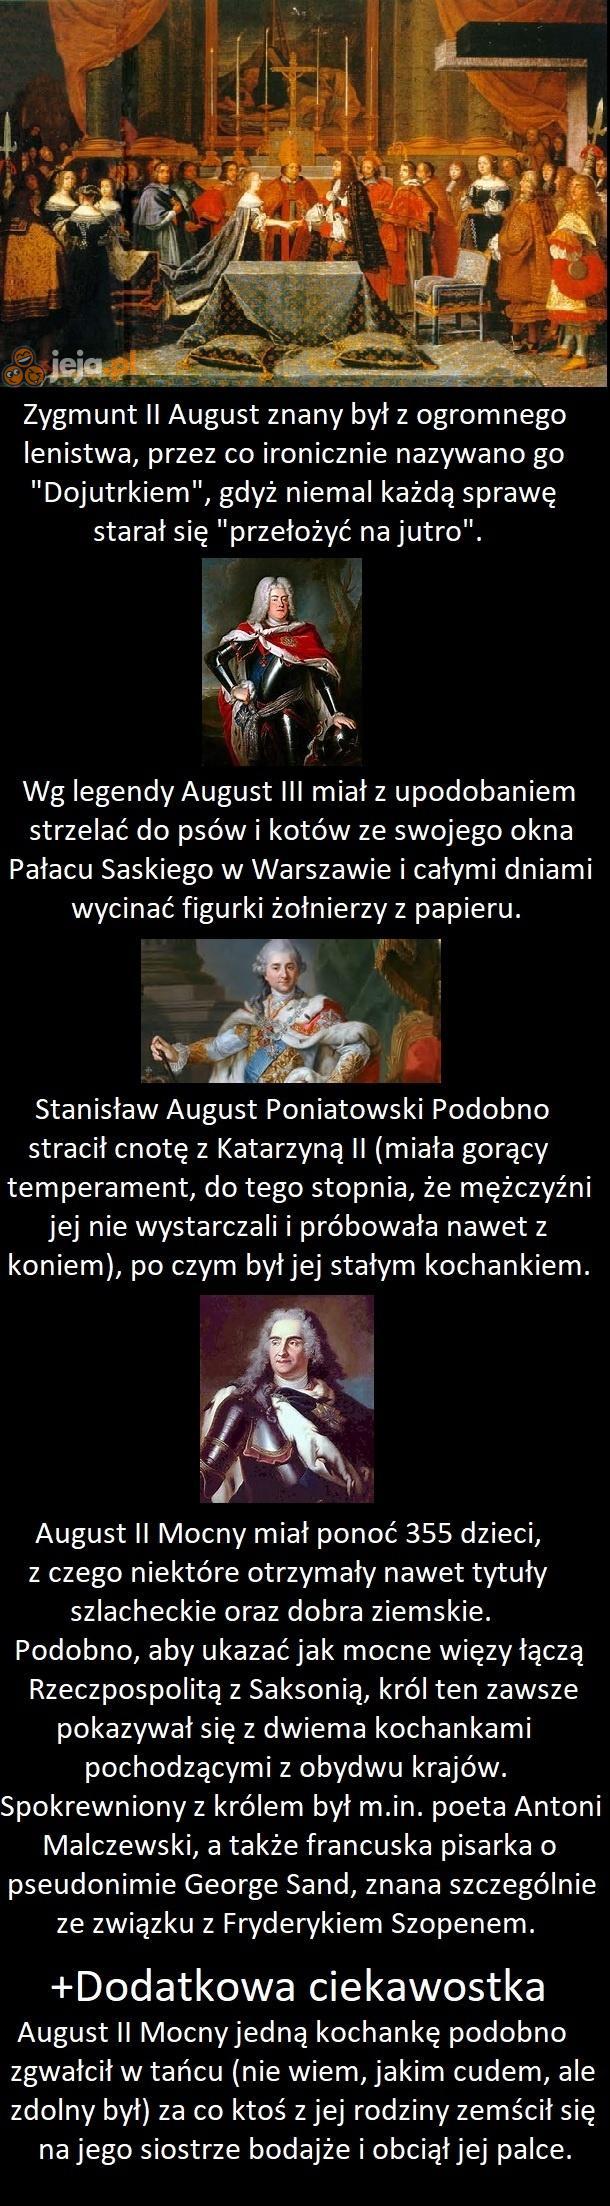 Ciekawostki o władcach i królach polskich